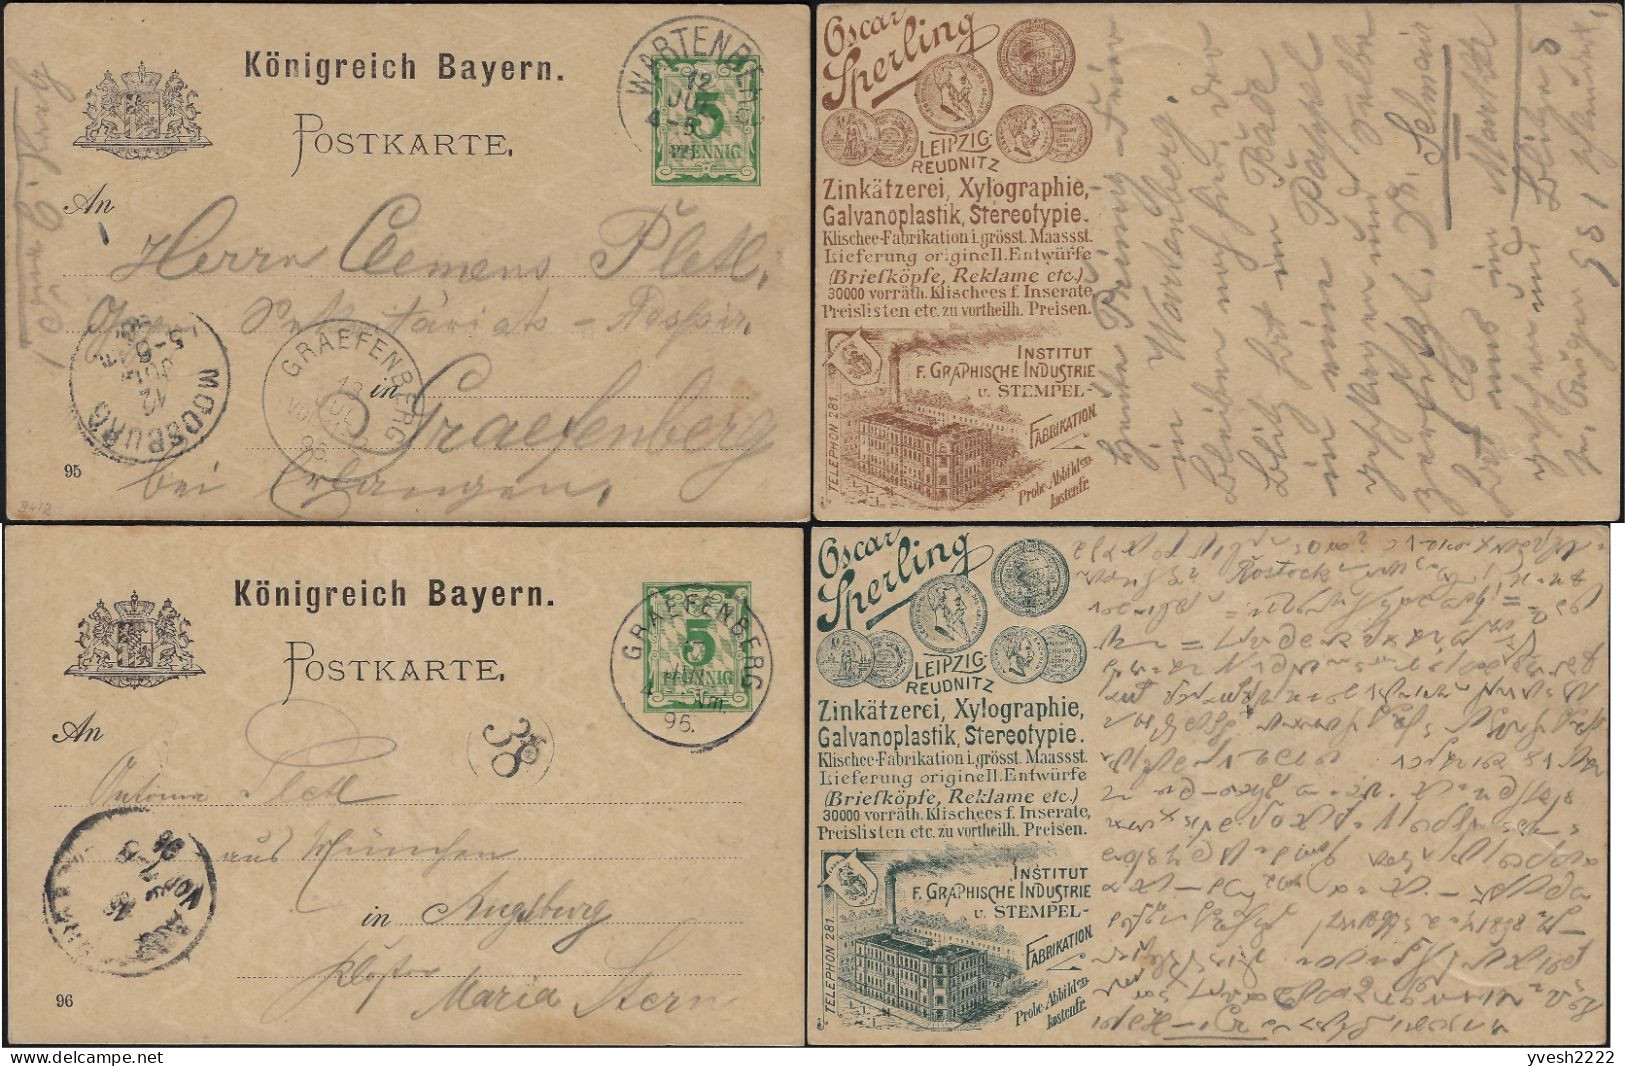 Bavière 1895. 2 Cartes Postales TSC. Oscar Sperling, Leipzig Reudnitz. Industrie Graphique Et Fabrication De Cachets - 1894 – Anversa (Belgio)